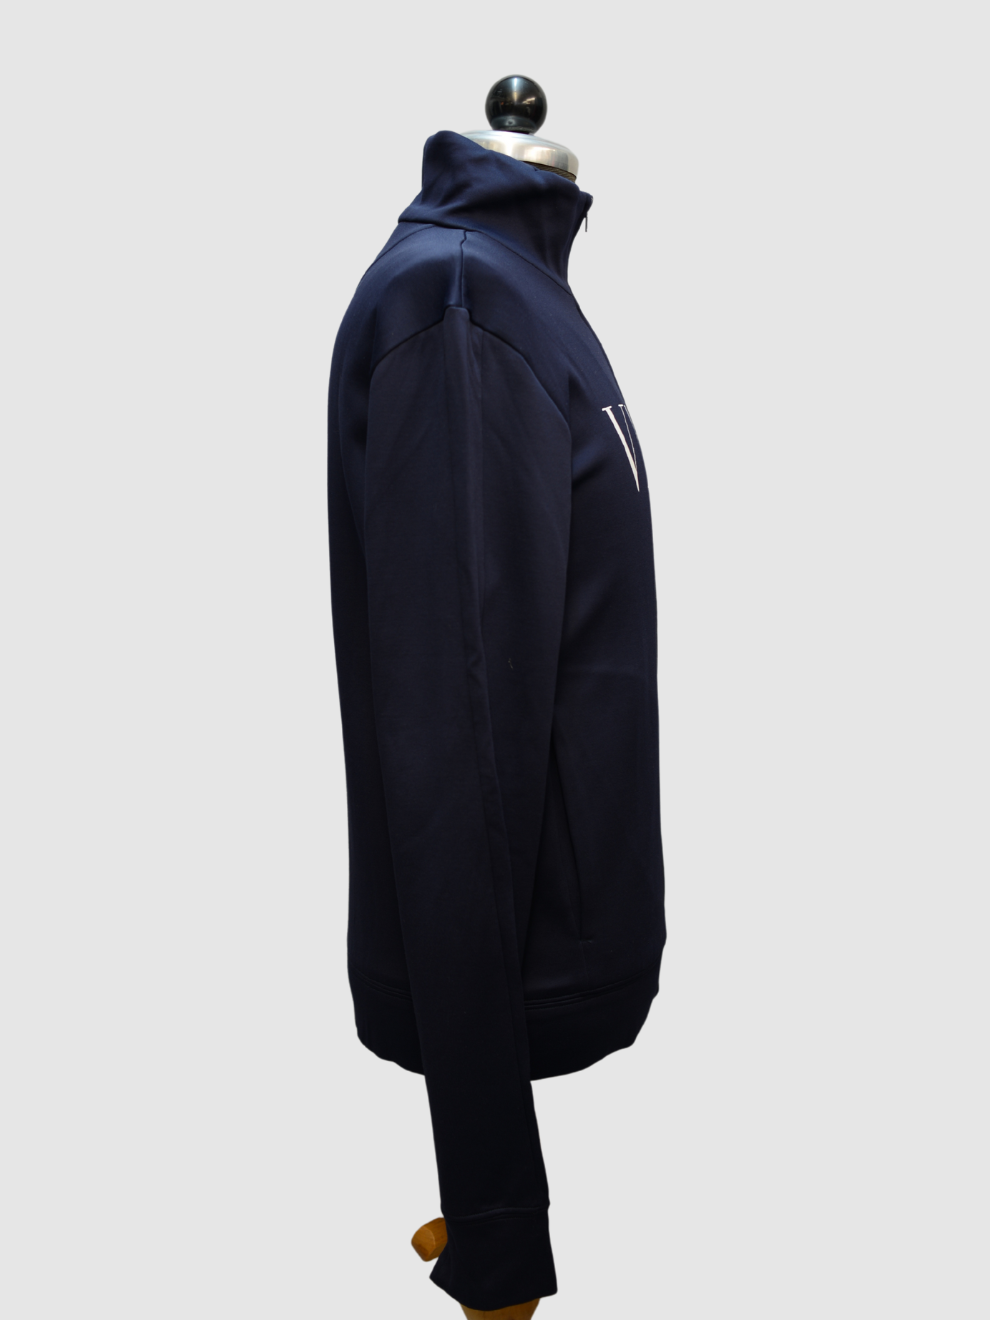 Nachtblaue Herren-Trainingsjacke mit Logo-Print von Valentino